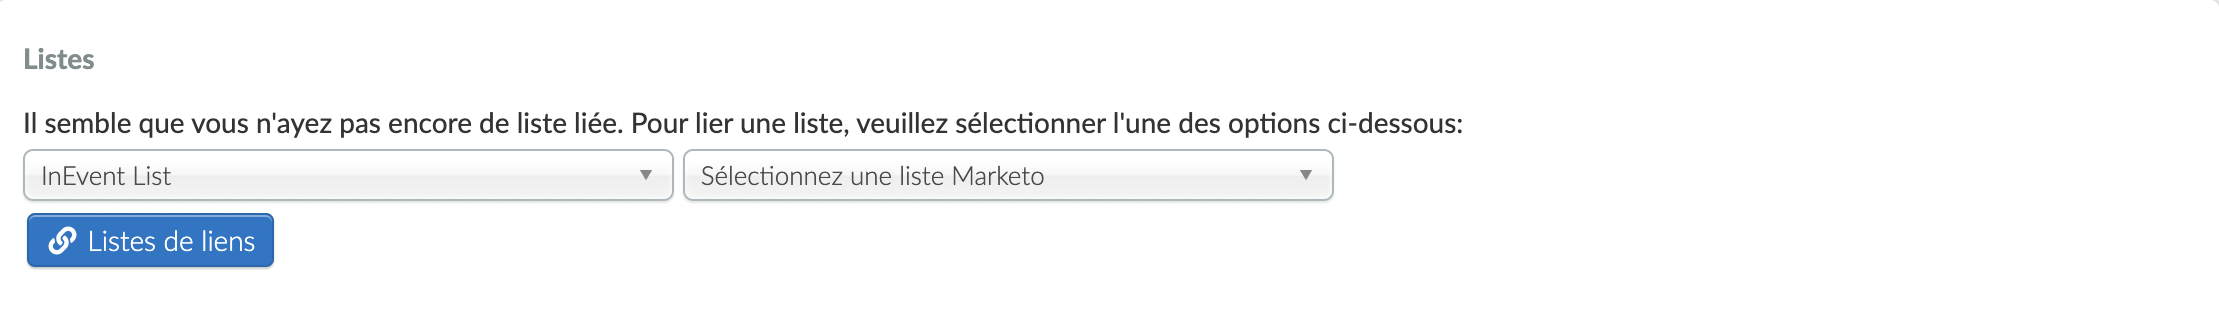 Capture d'écran des listes sur la page d'intégration de Marketo